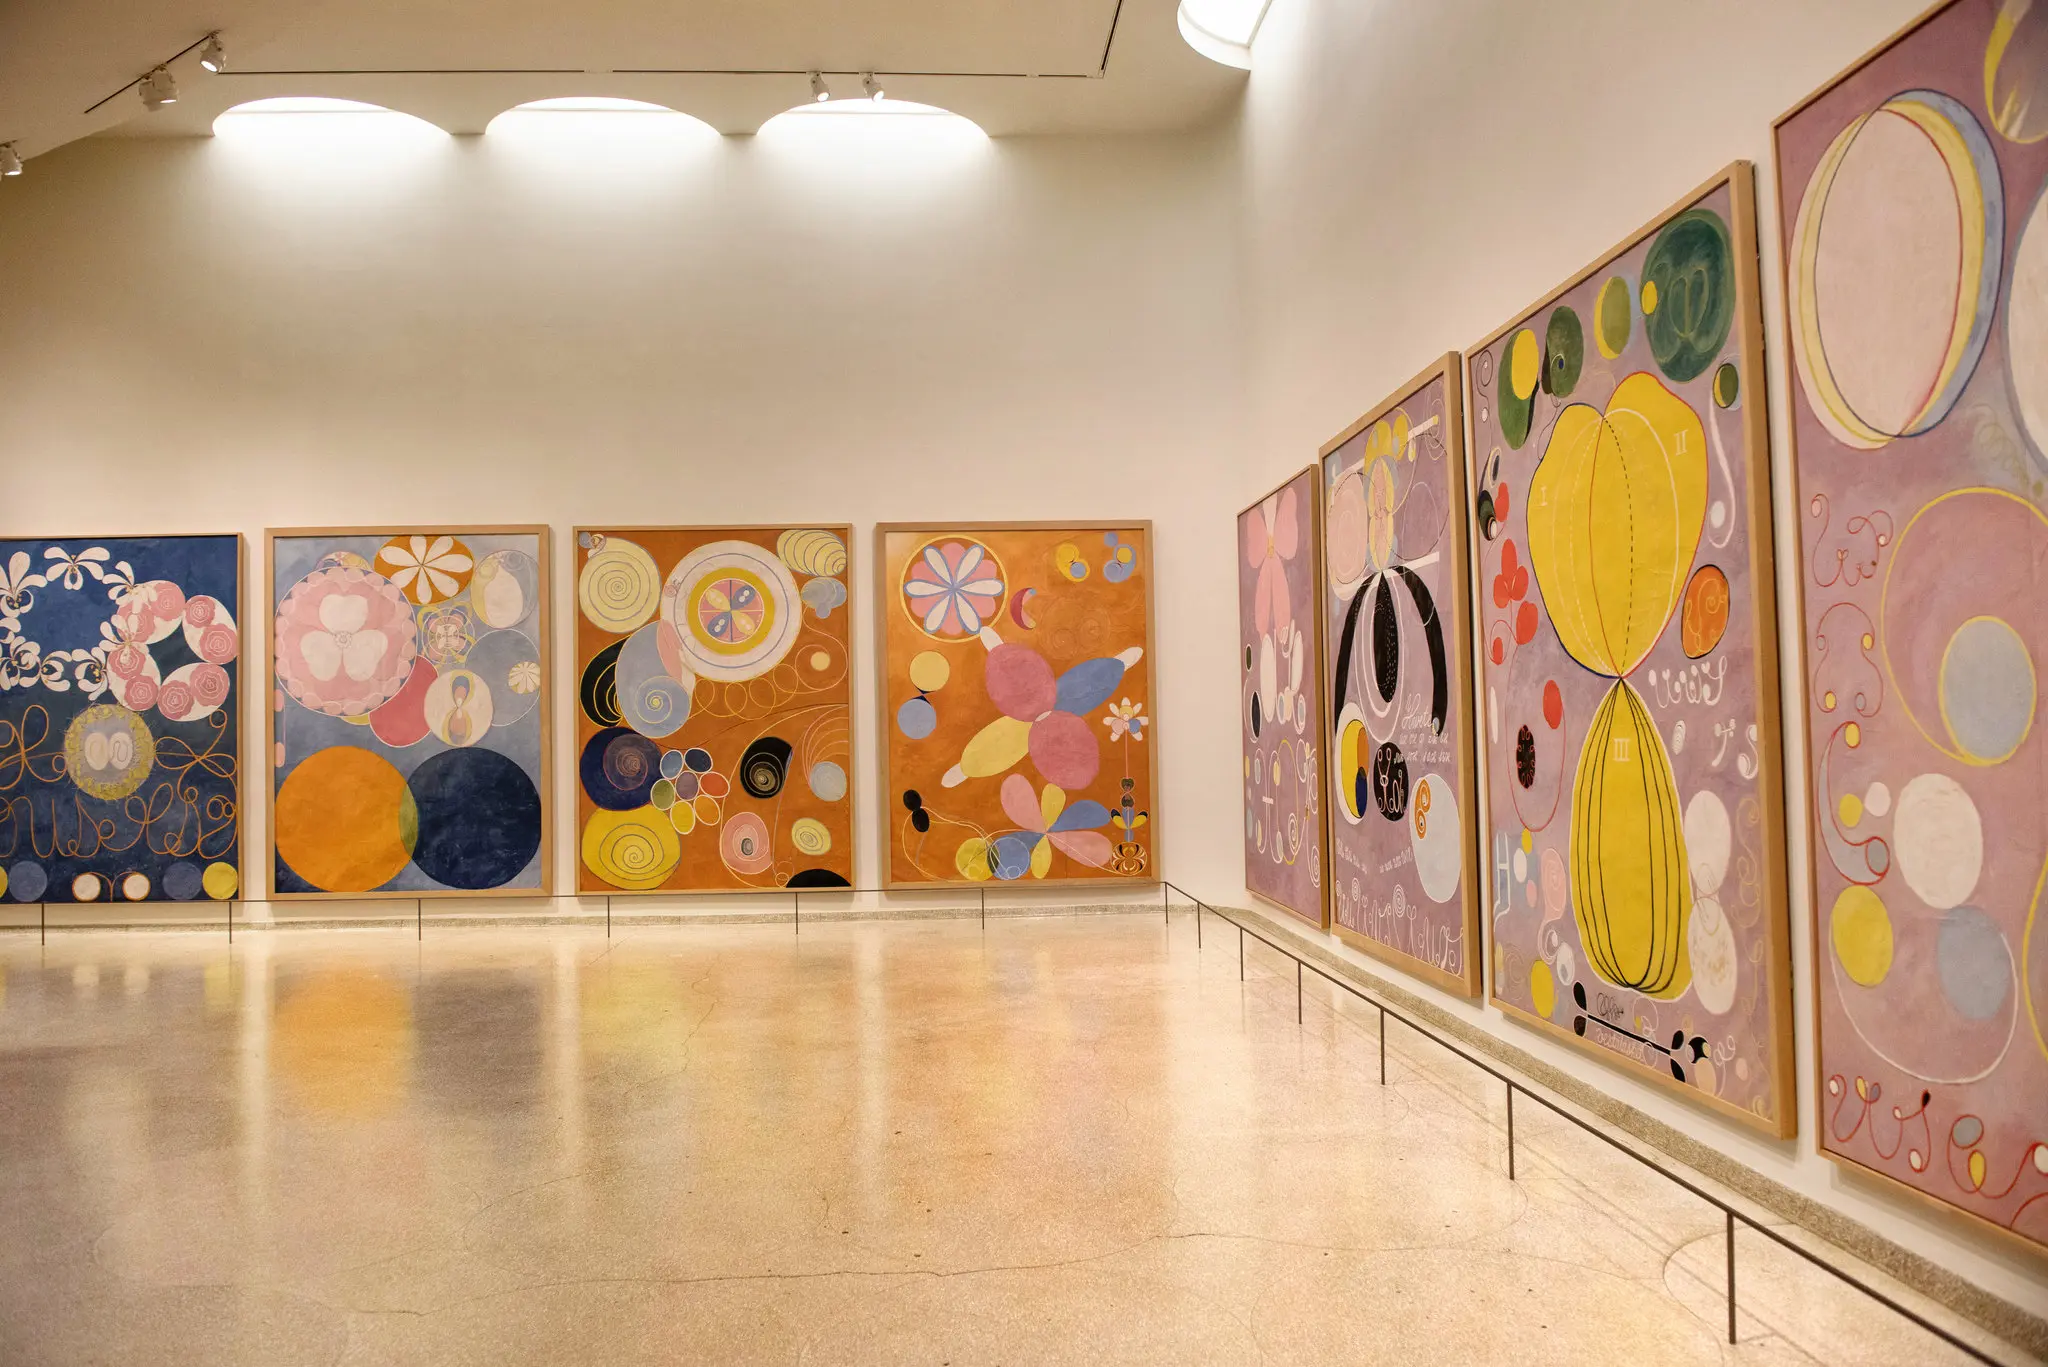 Hilma af Klint foi a estrela inesperada do calendário cultural do ano passado com uma exposição no Museu Guggenheim de Nova York que estabeleceu recordes de público. (Crédito: cortesia © Copyright George Etheredge para o New York Times)